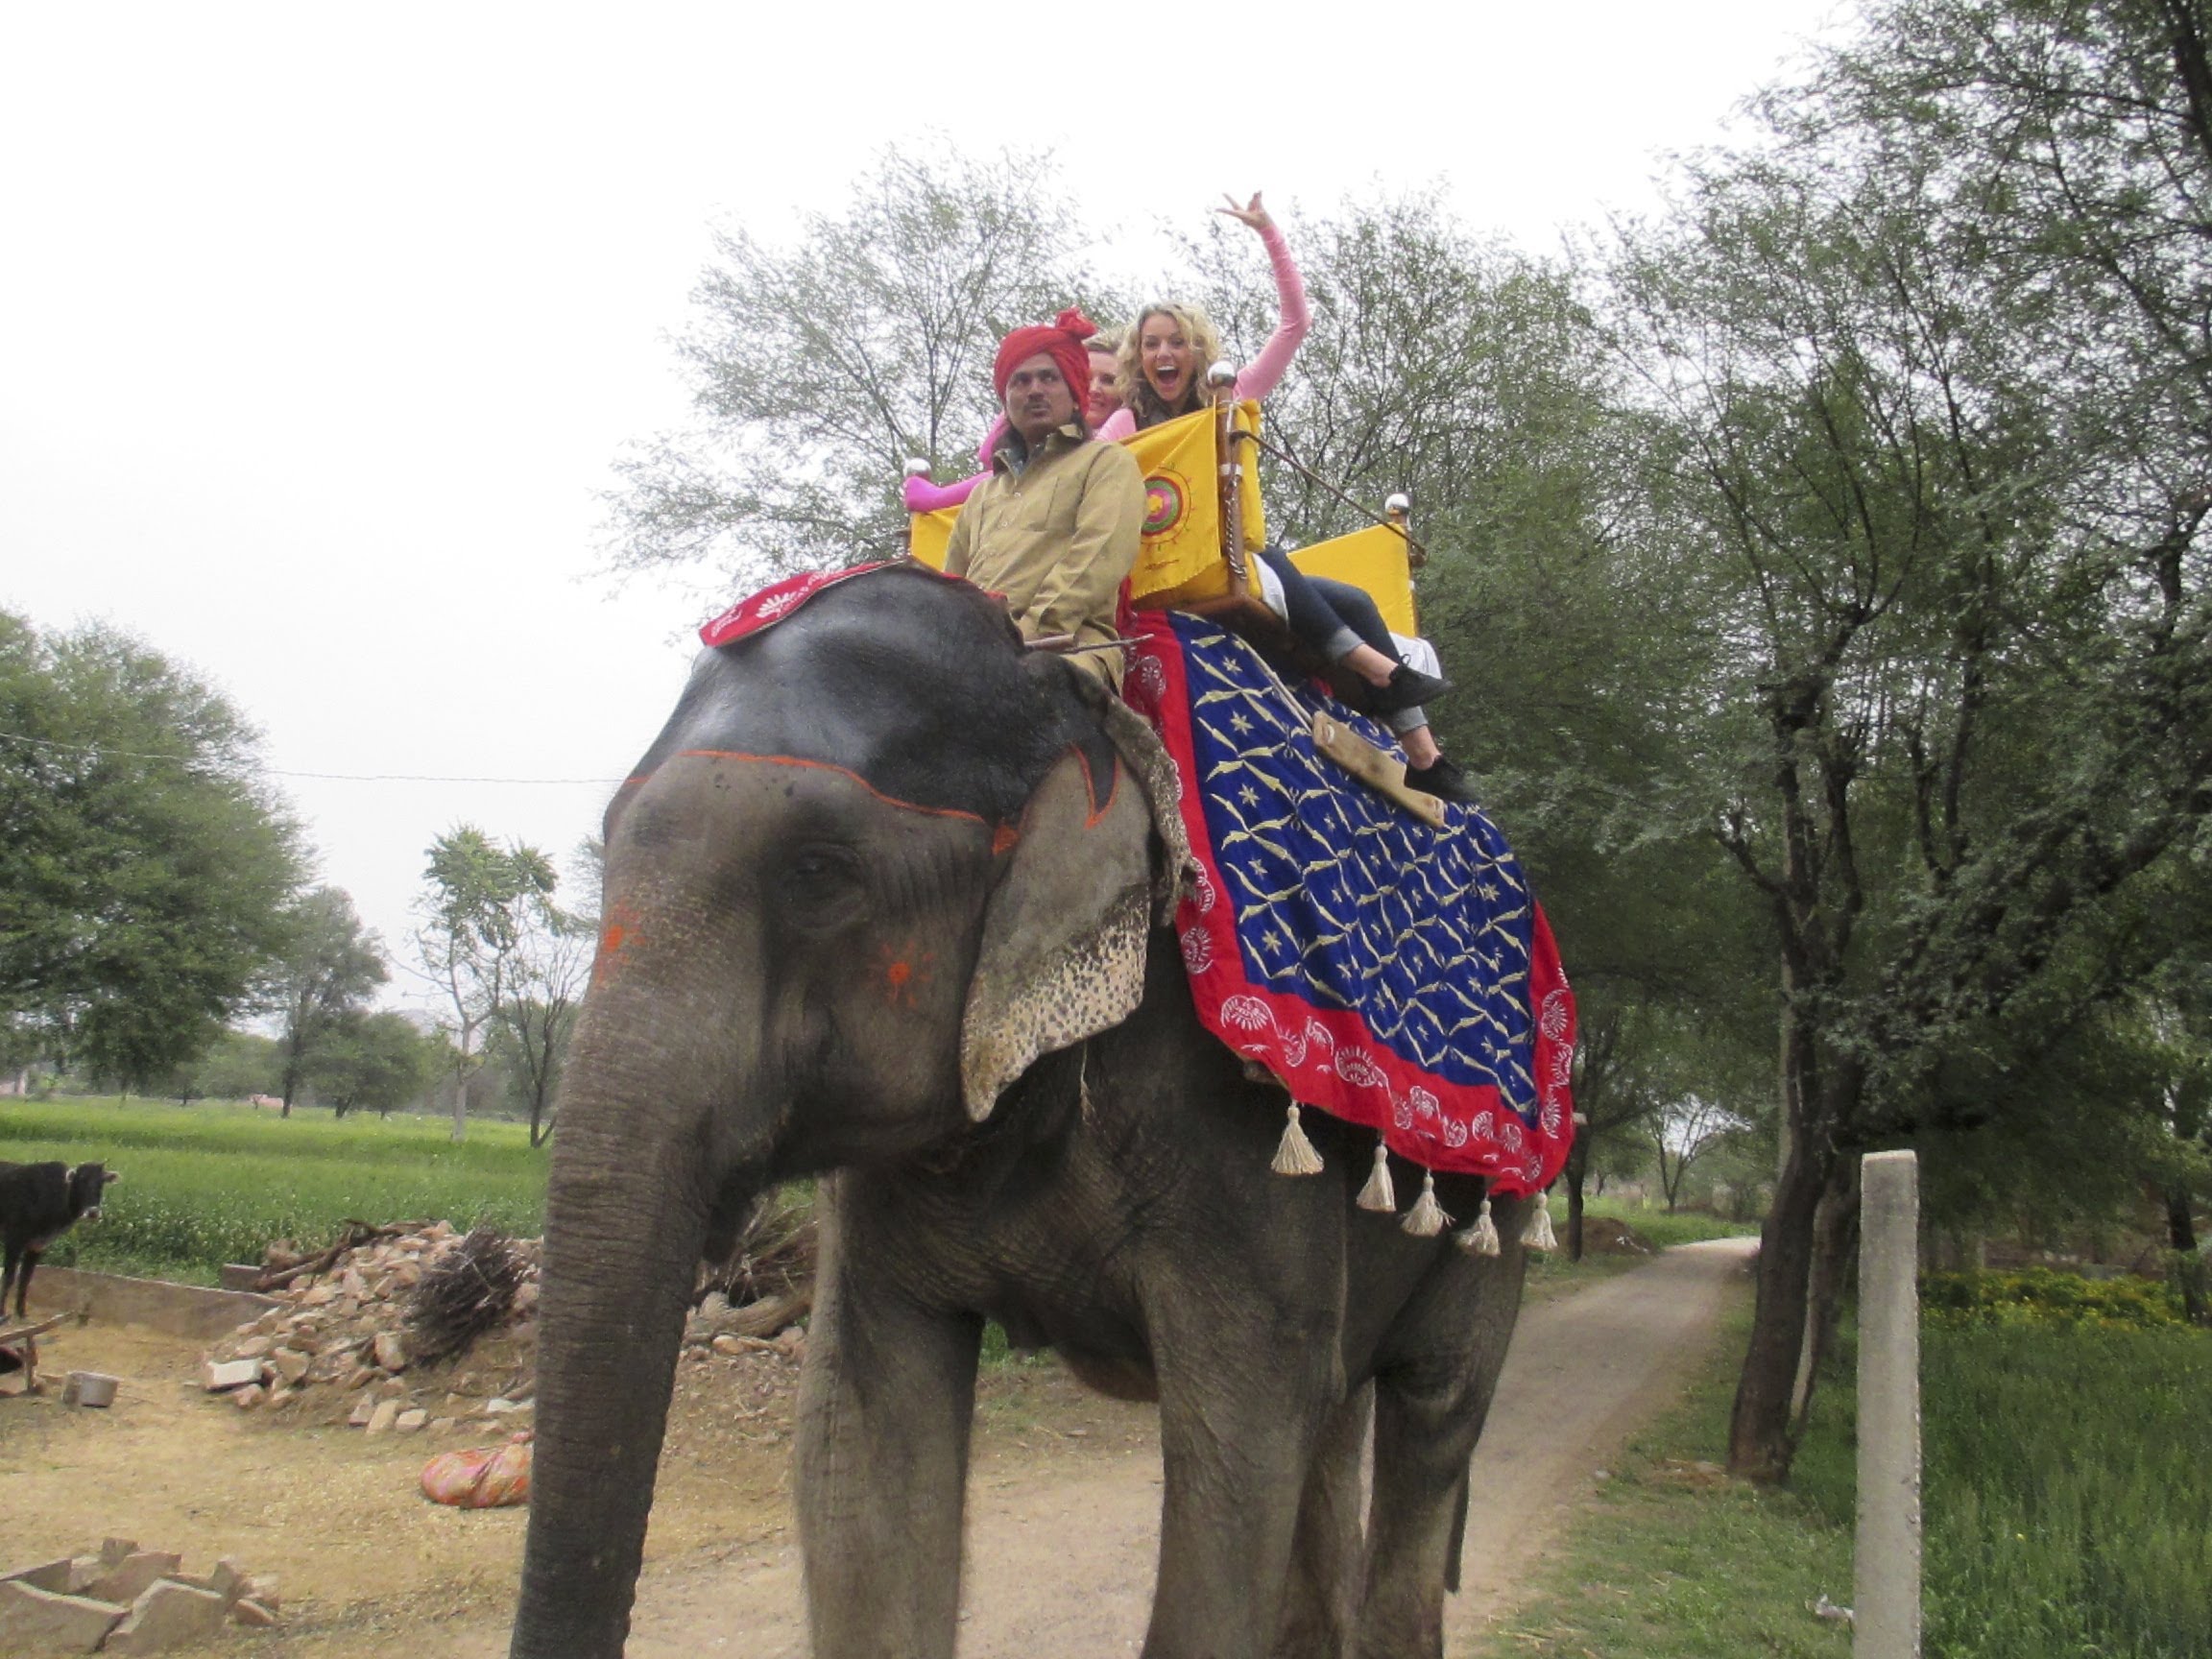 Elephant Ride in Jaipur, India - YouTube